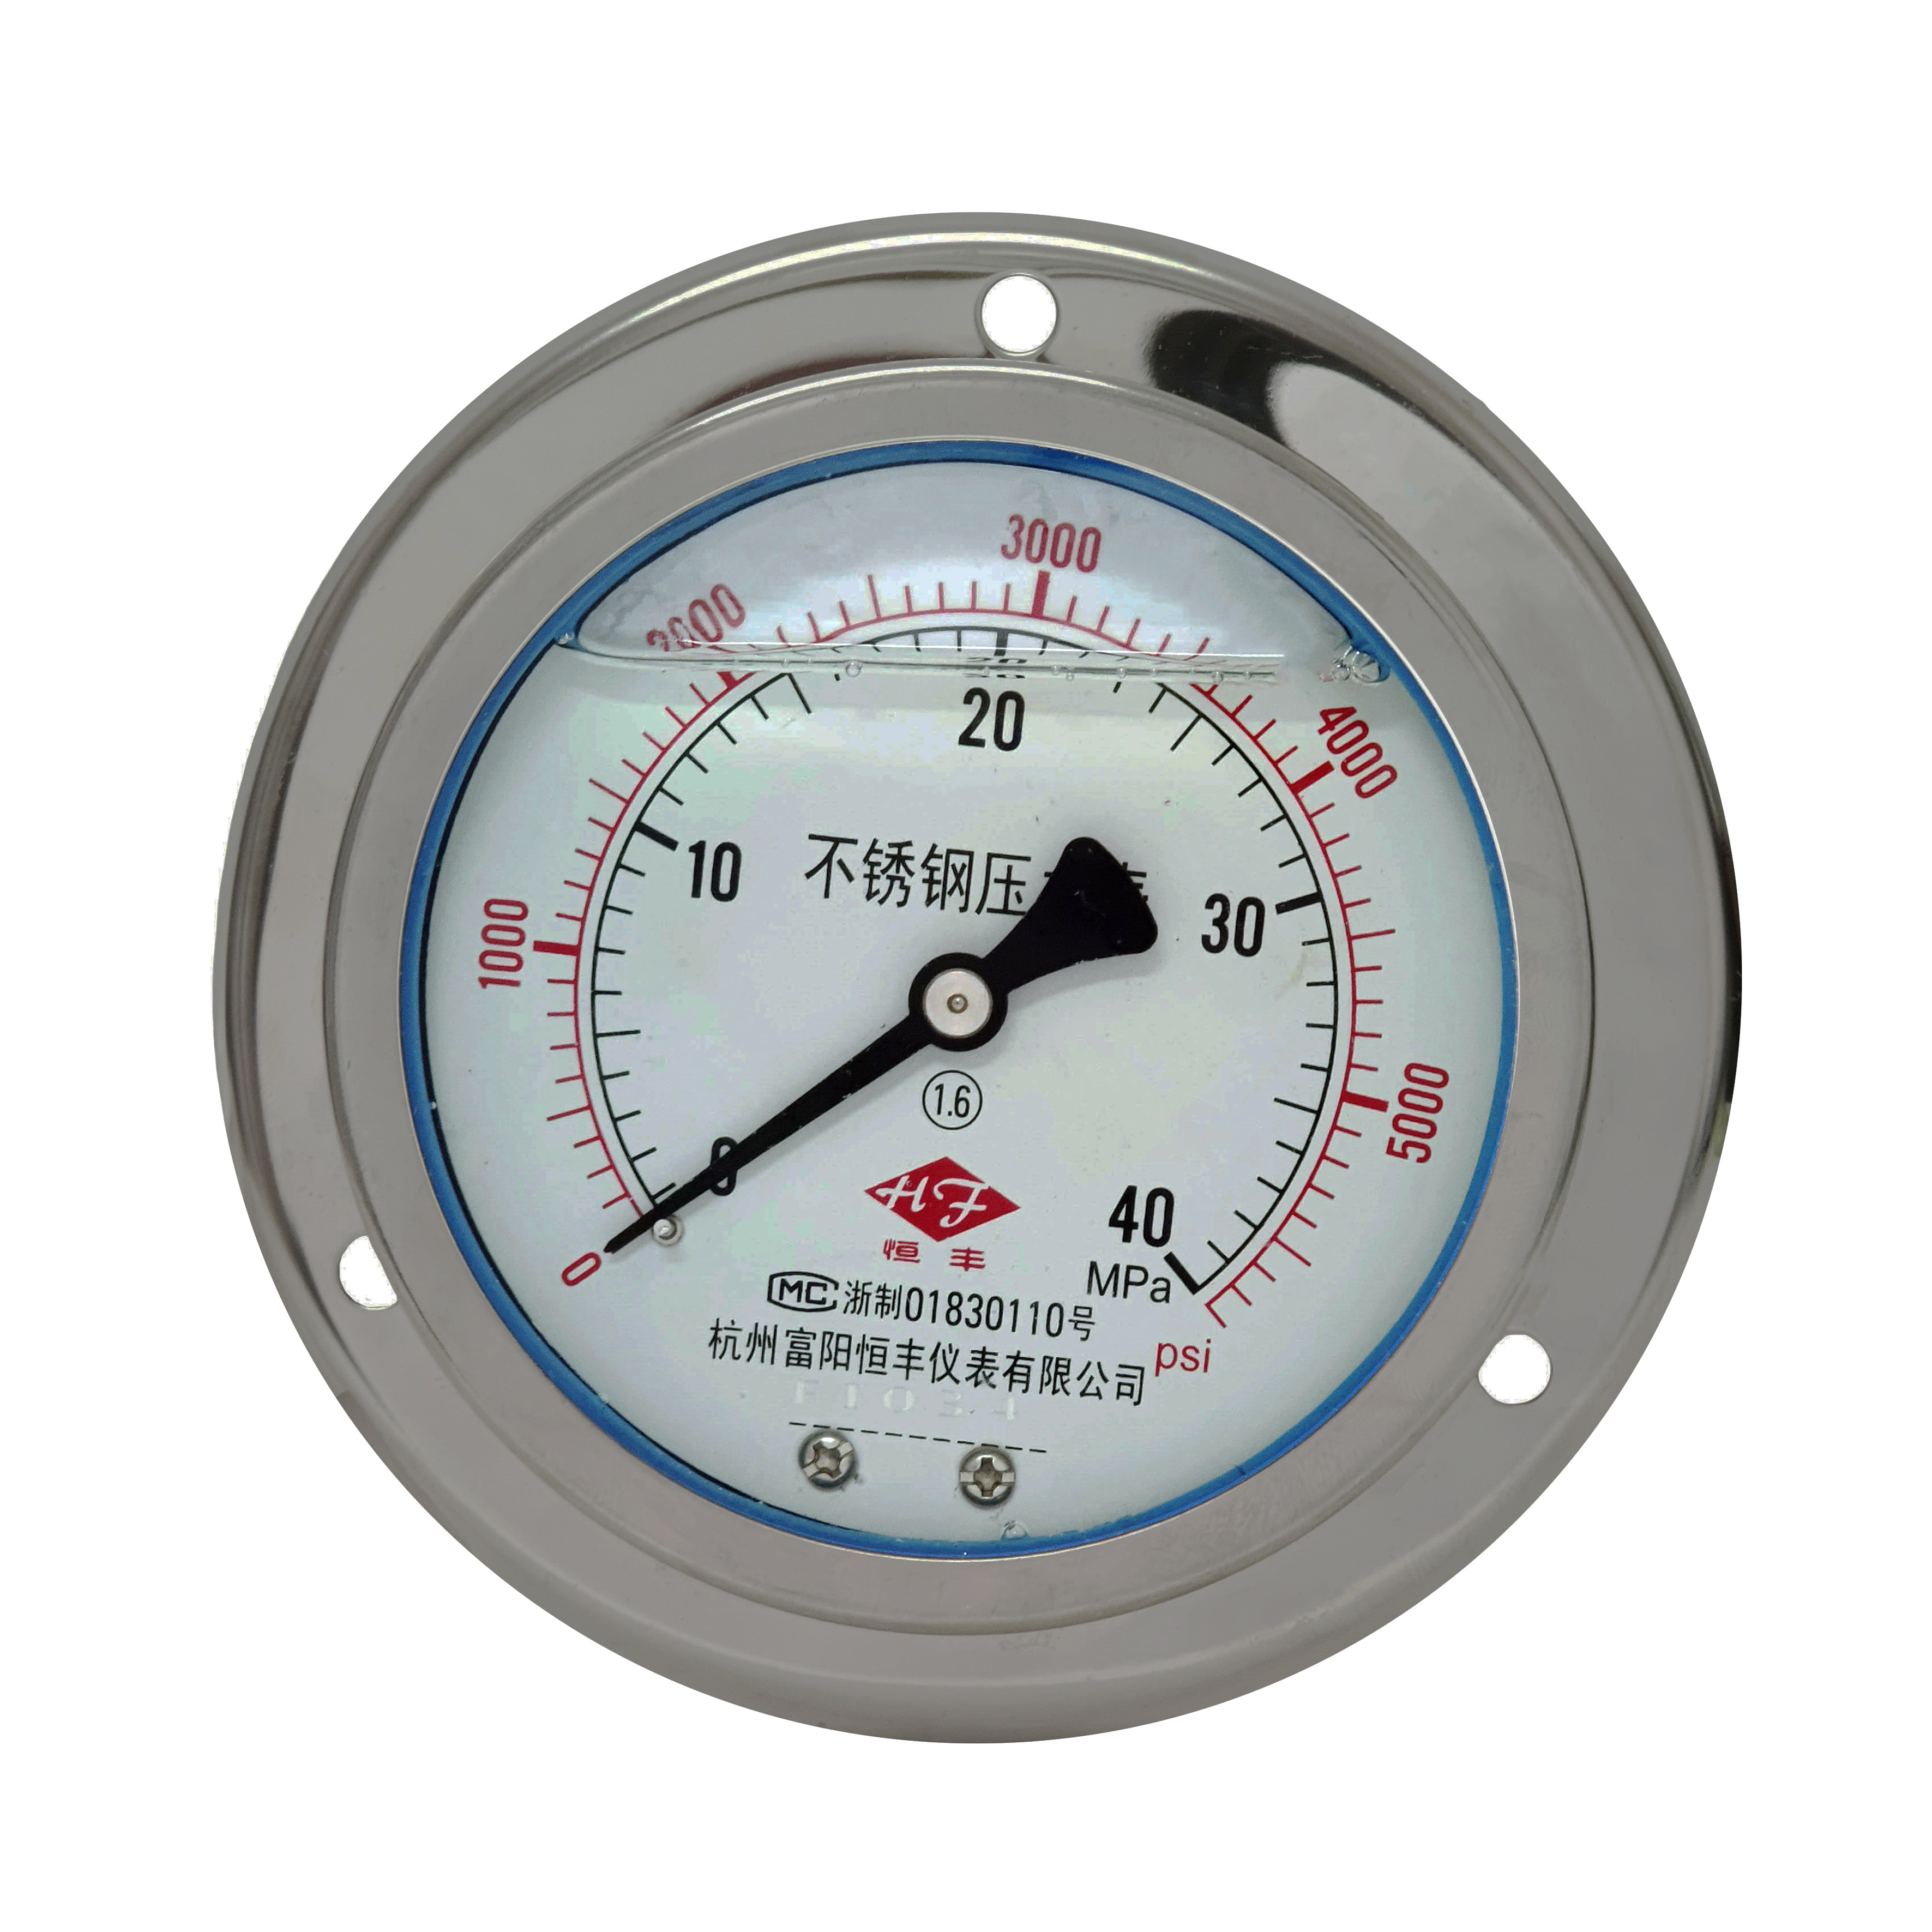 Y100BFZT stainless steel pressure gauge